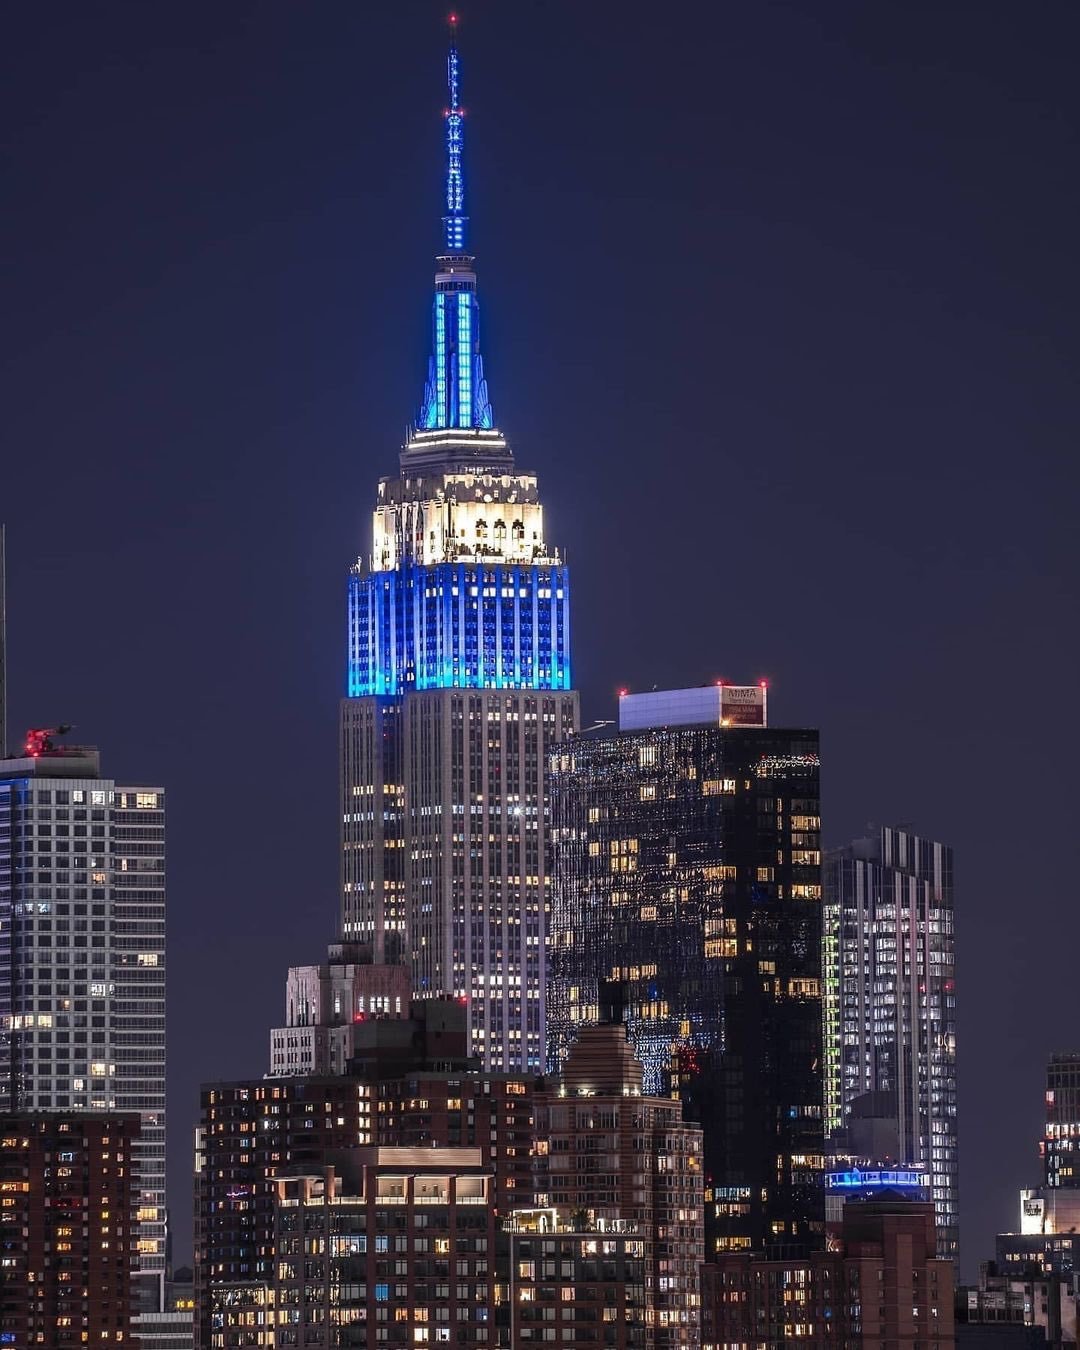 13일(현지 시간) 미국 뉴욕의 랜드마크인 엠파이어스테이트 빌딩이 이스라엘 국기 색인 파란색과 흰색 조명으로 빛나고 있다. 이스라엘을 지지한다는 취지다. 사진 출처 엠파이어스테이트 빌딩 X